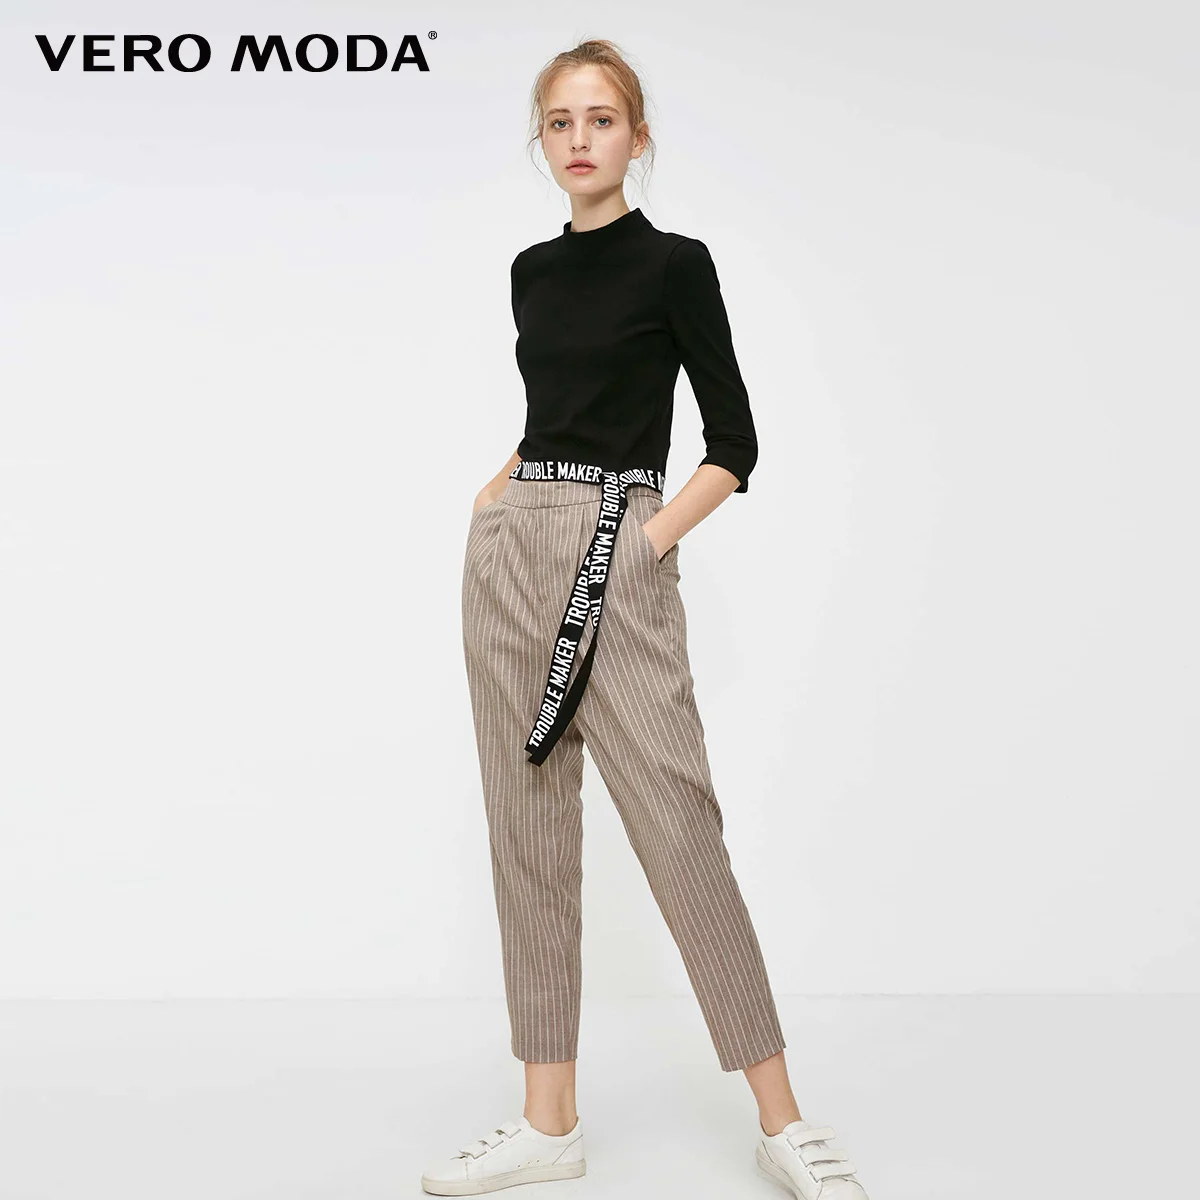 Vero Moda новые женские брюки женские OL Стиль Полосатый средней посадки повседневные укороченные брюки и капри | 318350517 - Цвет: Caramel camel mel.